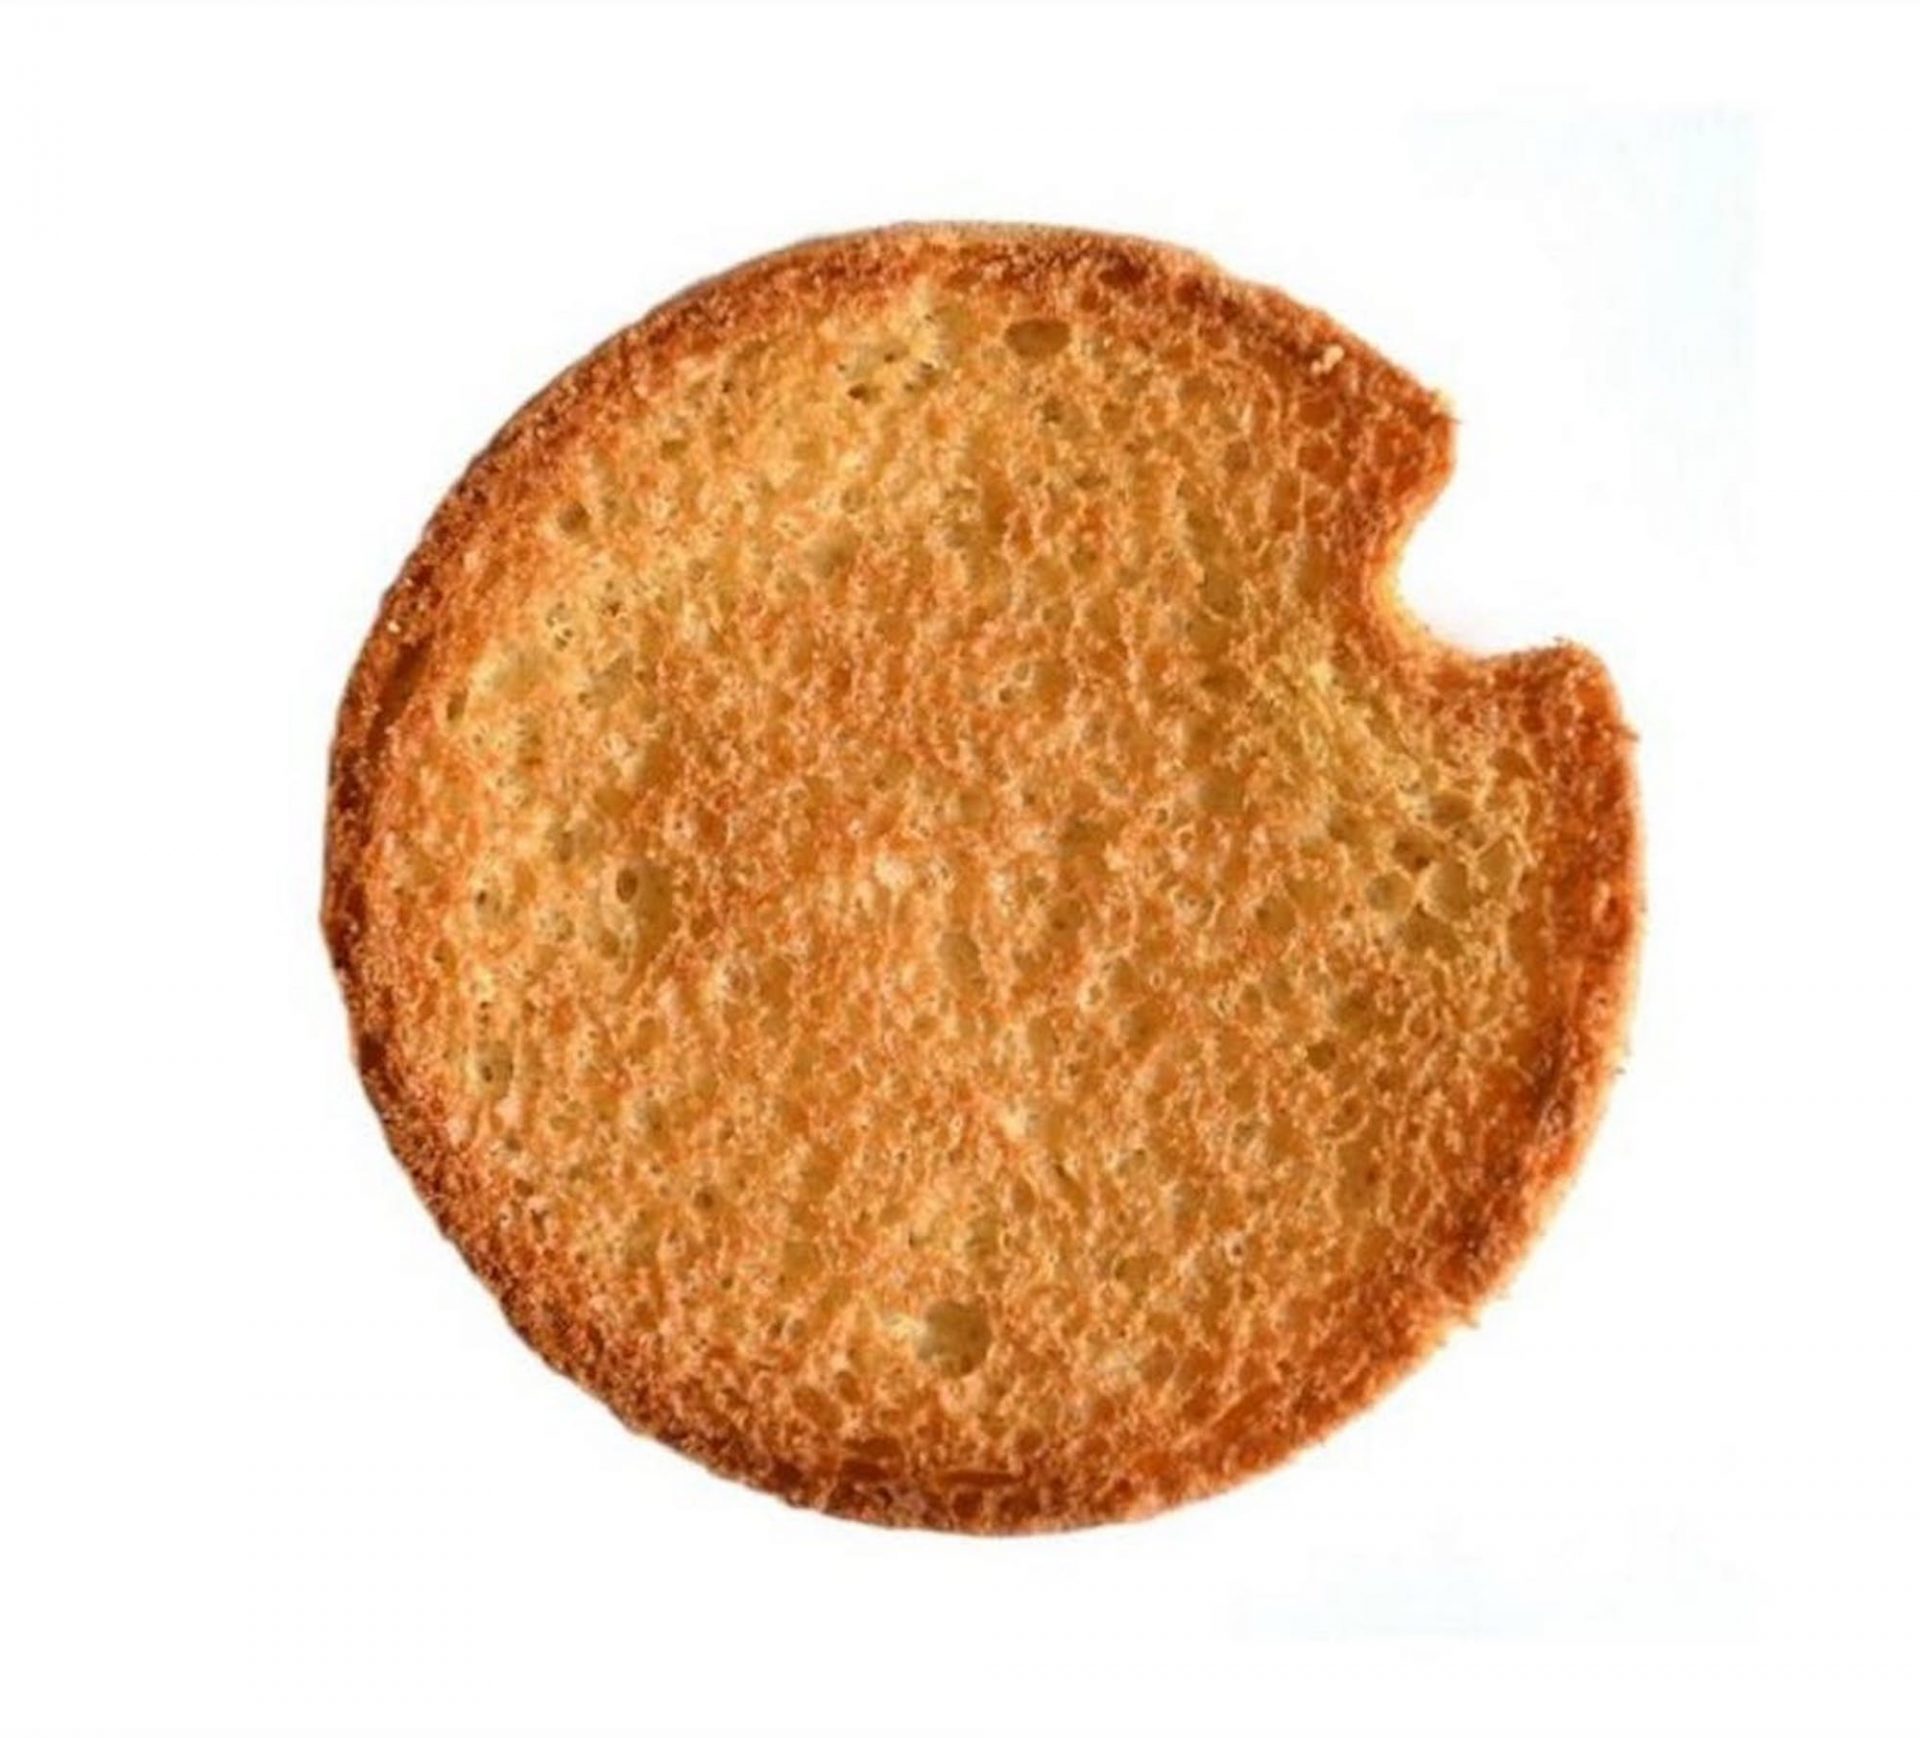 Bolletje : des biscuits avec une encoche pour les sortir plus facilement du paquet